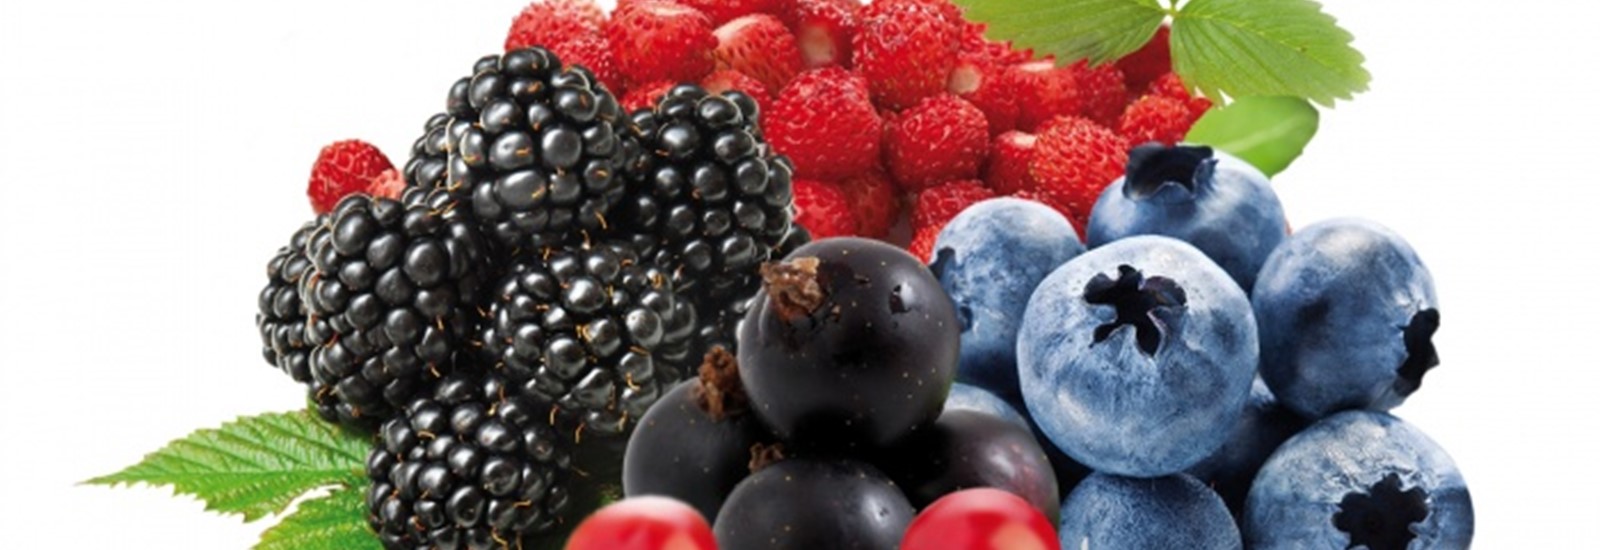 Frozen Fruits & Purees